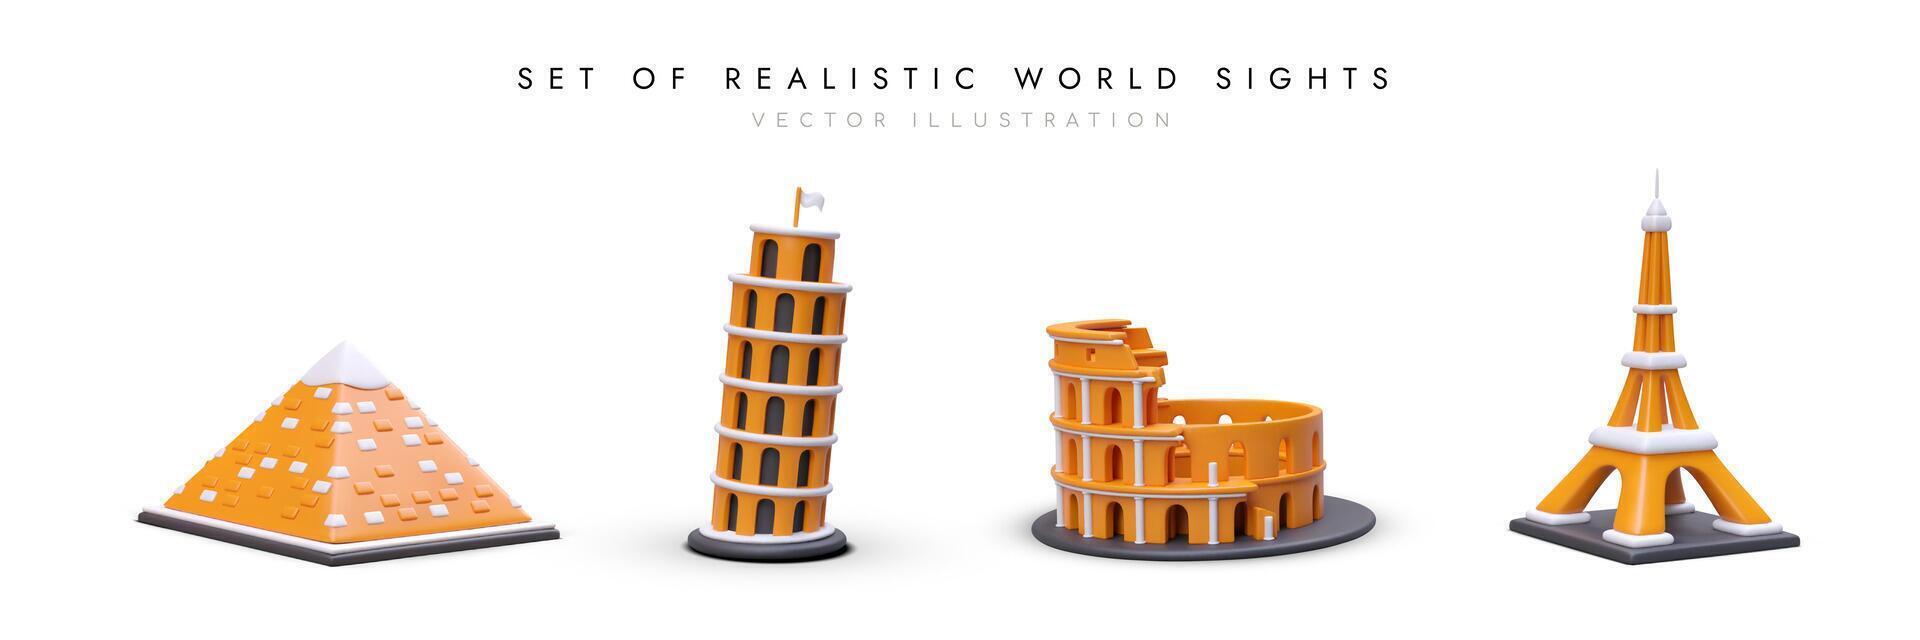 reeks van realistisch bouwkundig monumenten van wereld. verzameling van 3d pictogrammen met schaduwen vector